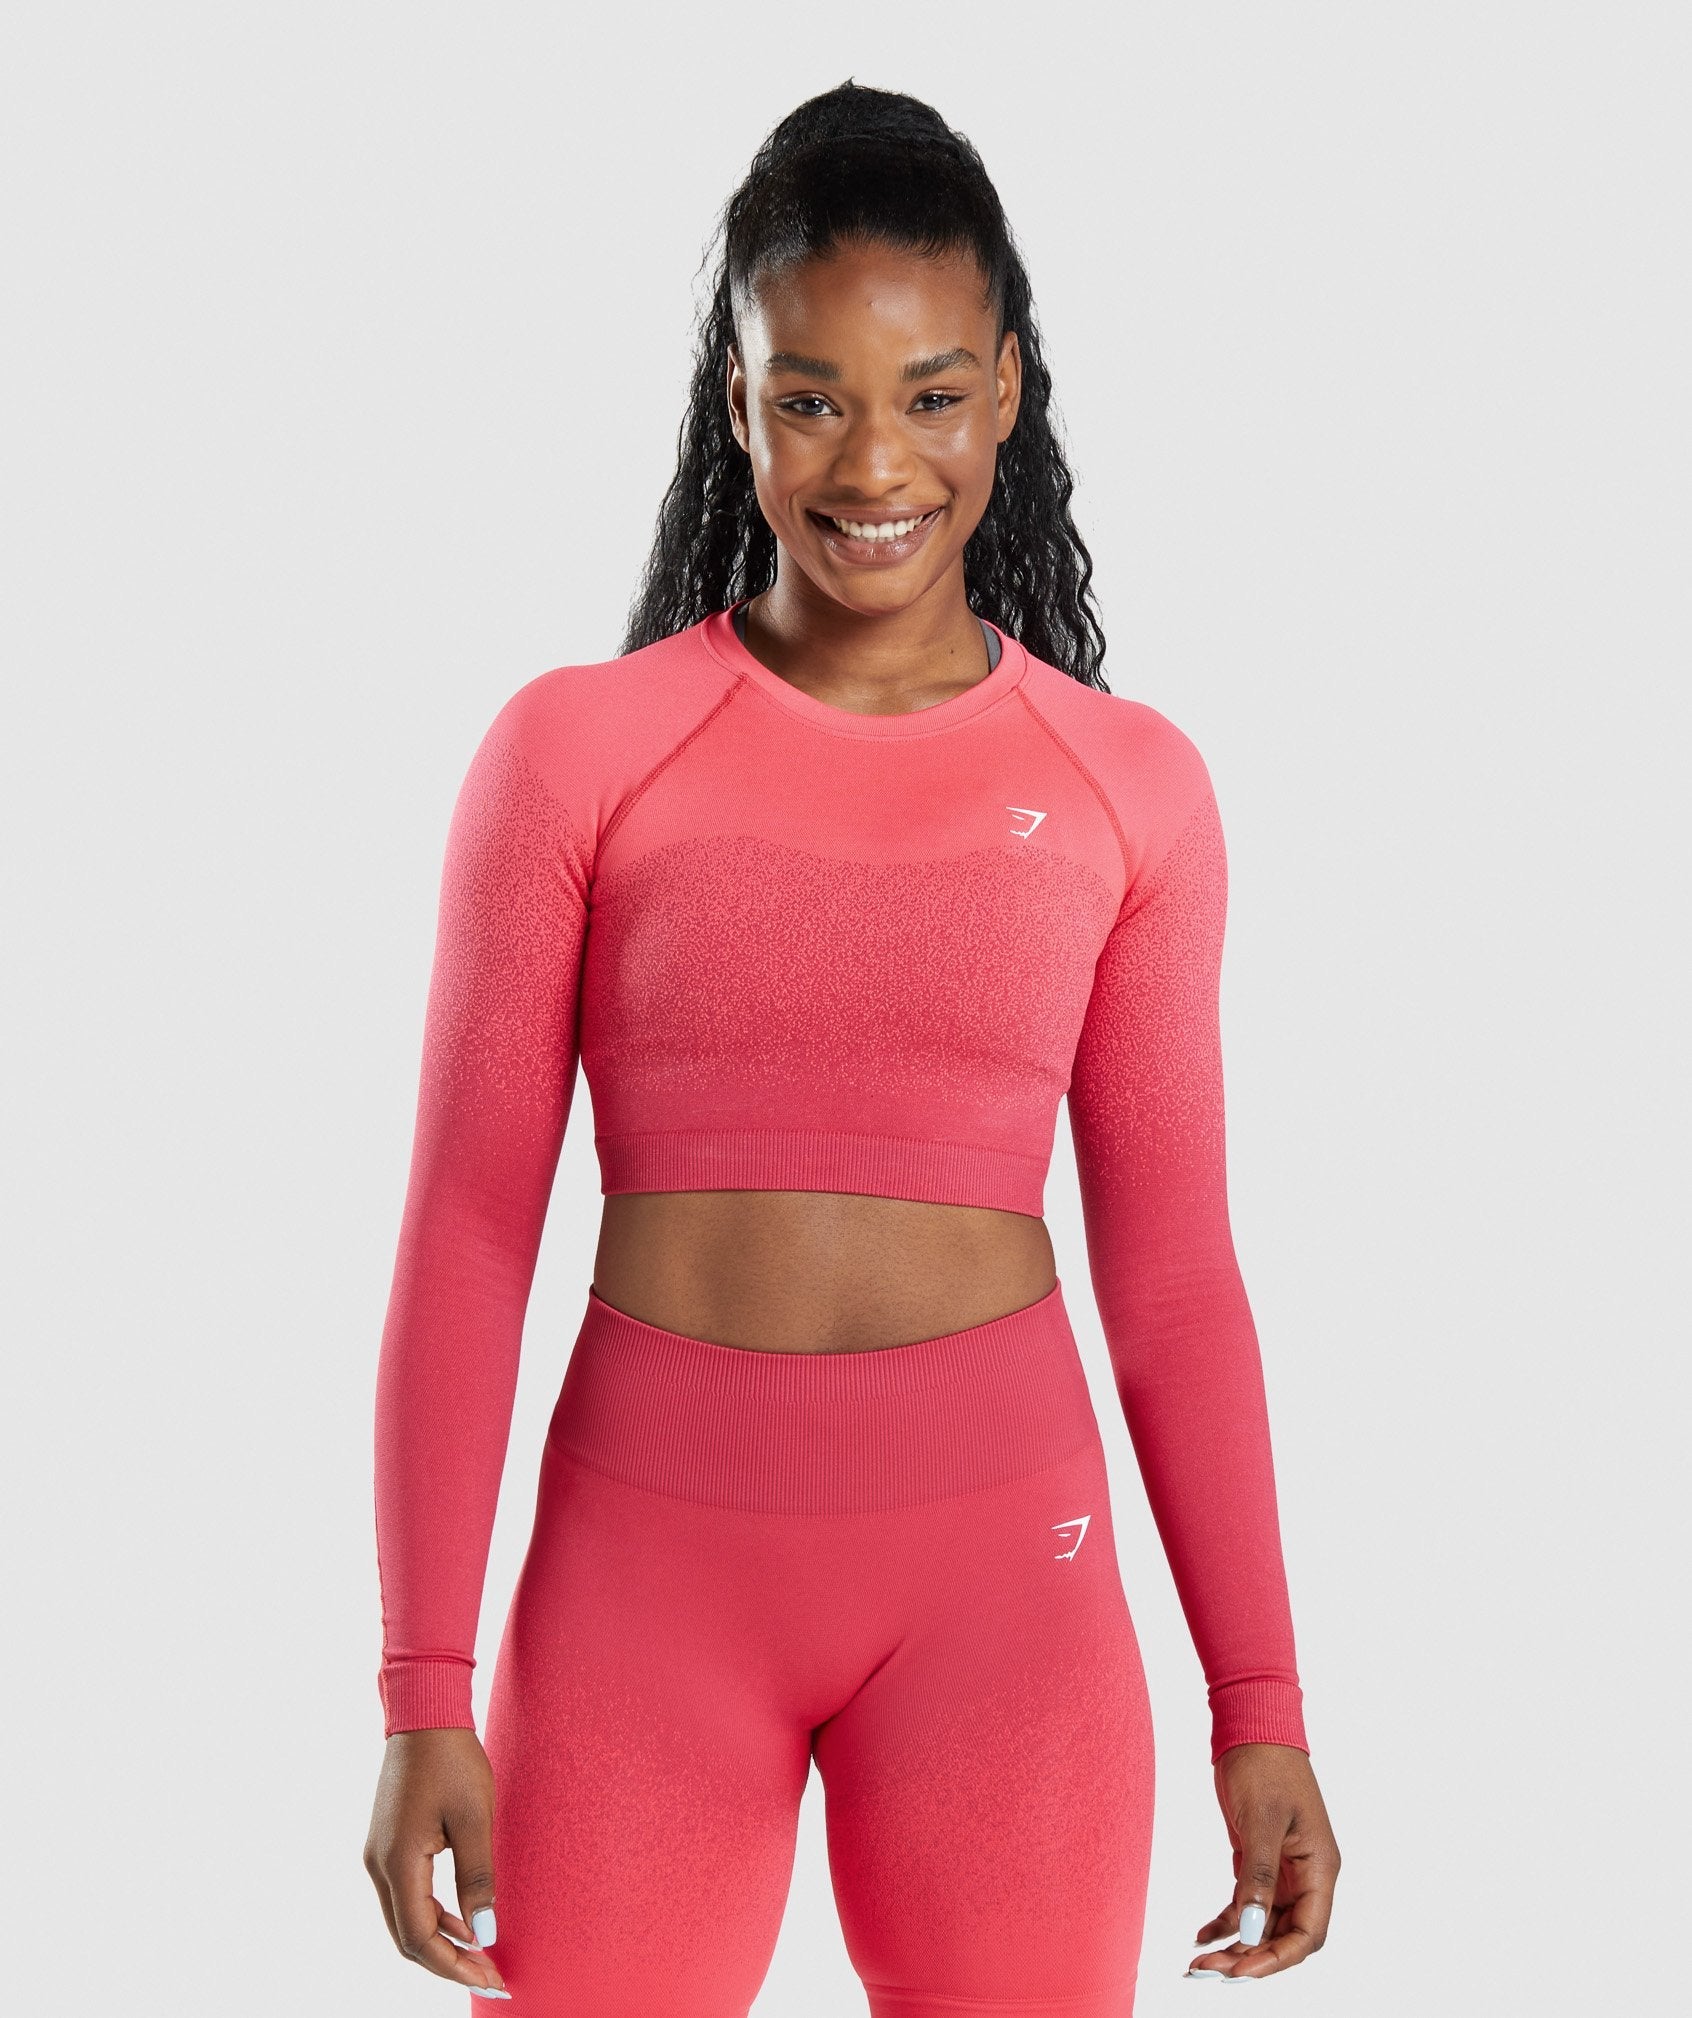 Gymshark Pink Ombre Gradient Women's Long Sleeve Crop Top Nylon